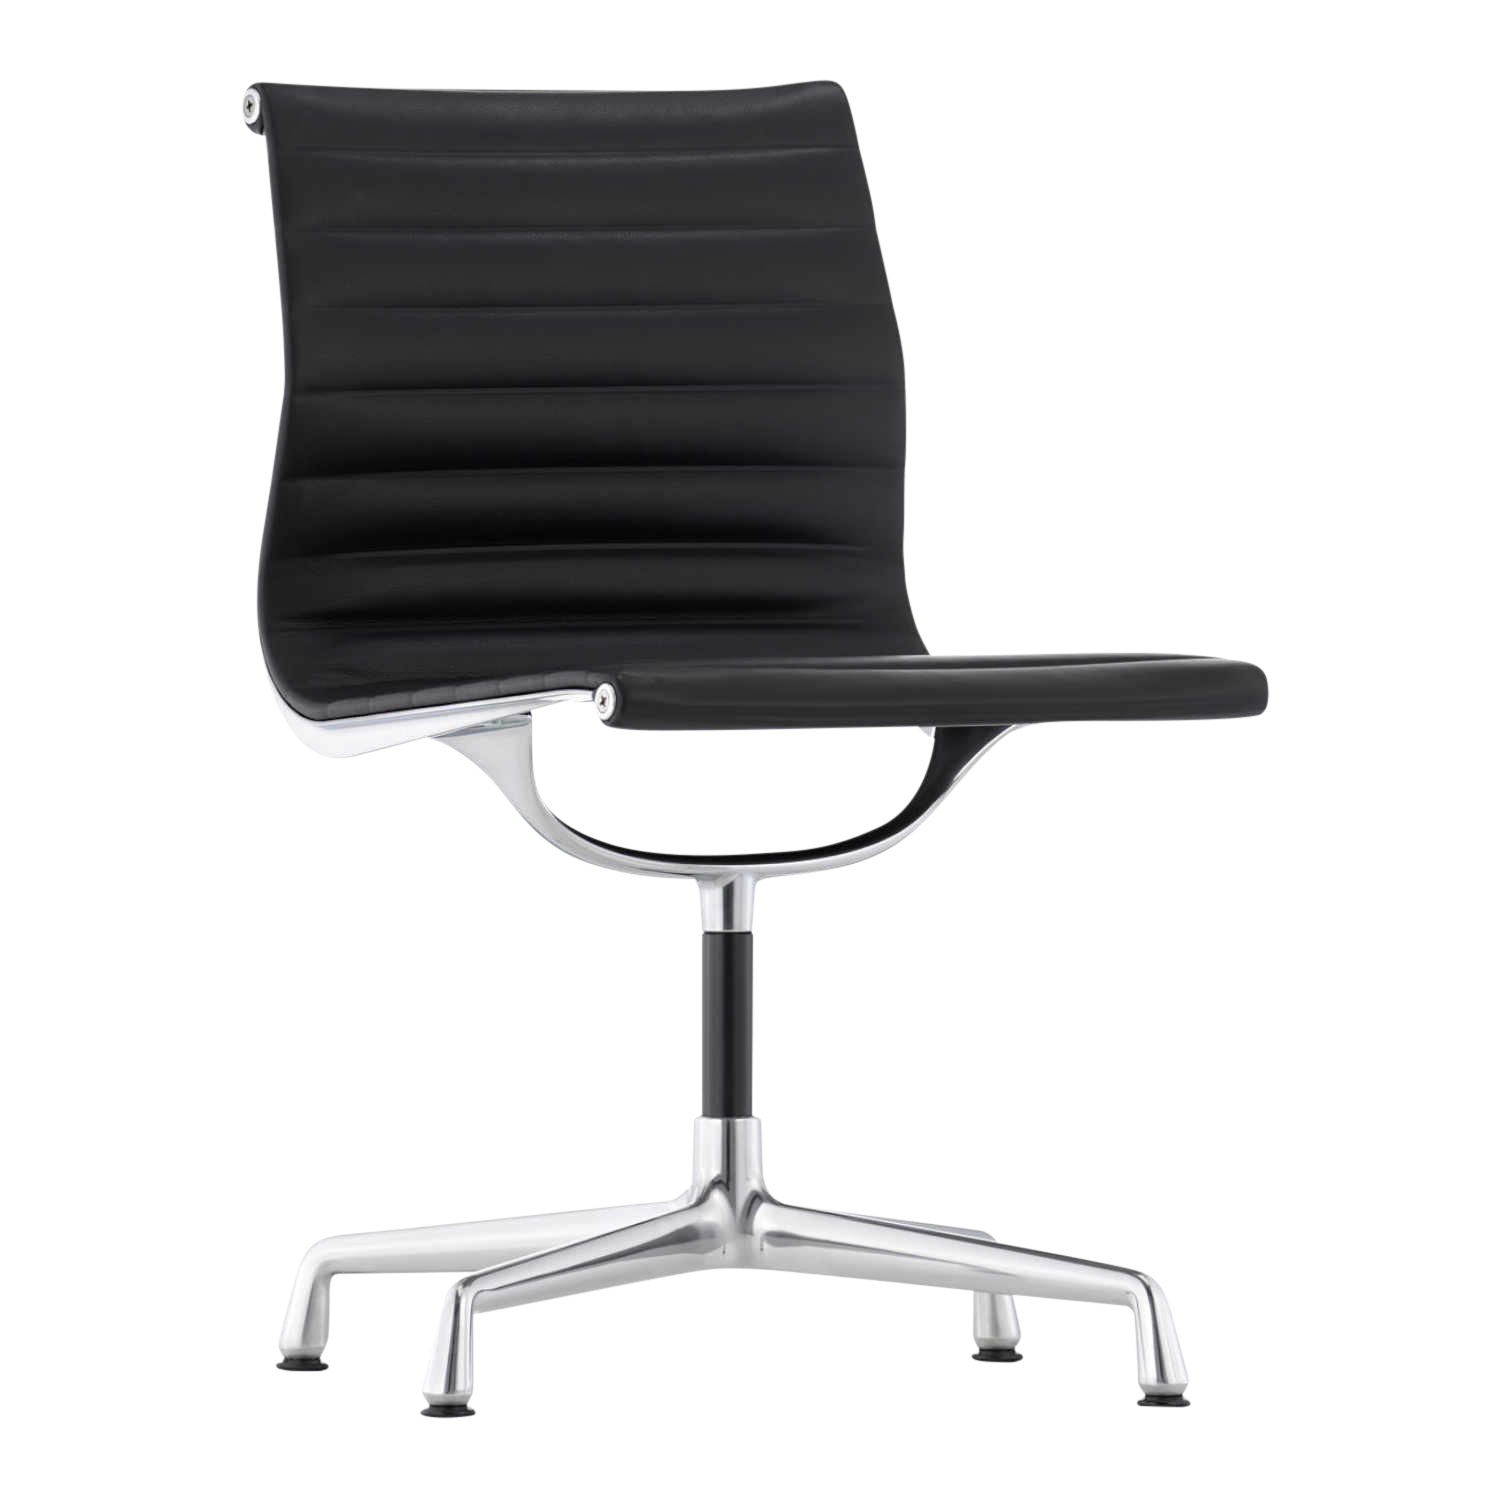 EA105 Aluminium Chair Lederstuhl, Leder/Rückseite Plano 69/54 kastanie / braun, Untergestell glanzchrom, Gleiter gleiter für teppichböden von Vitra